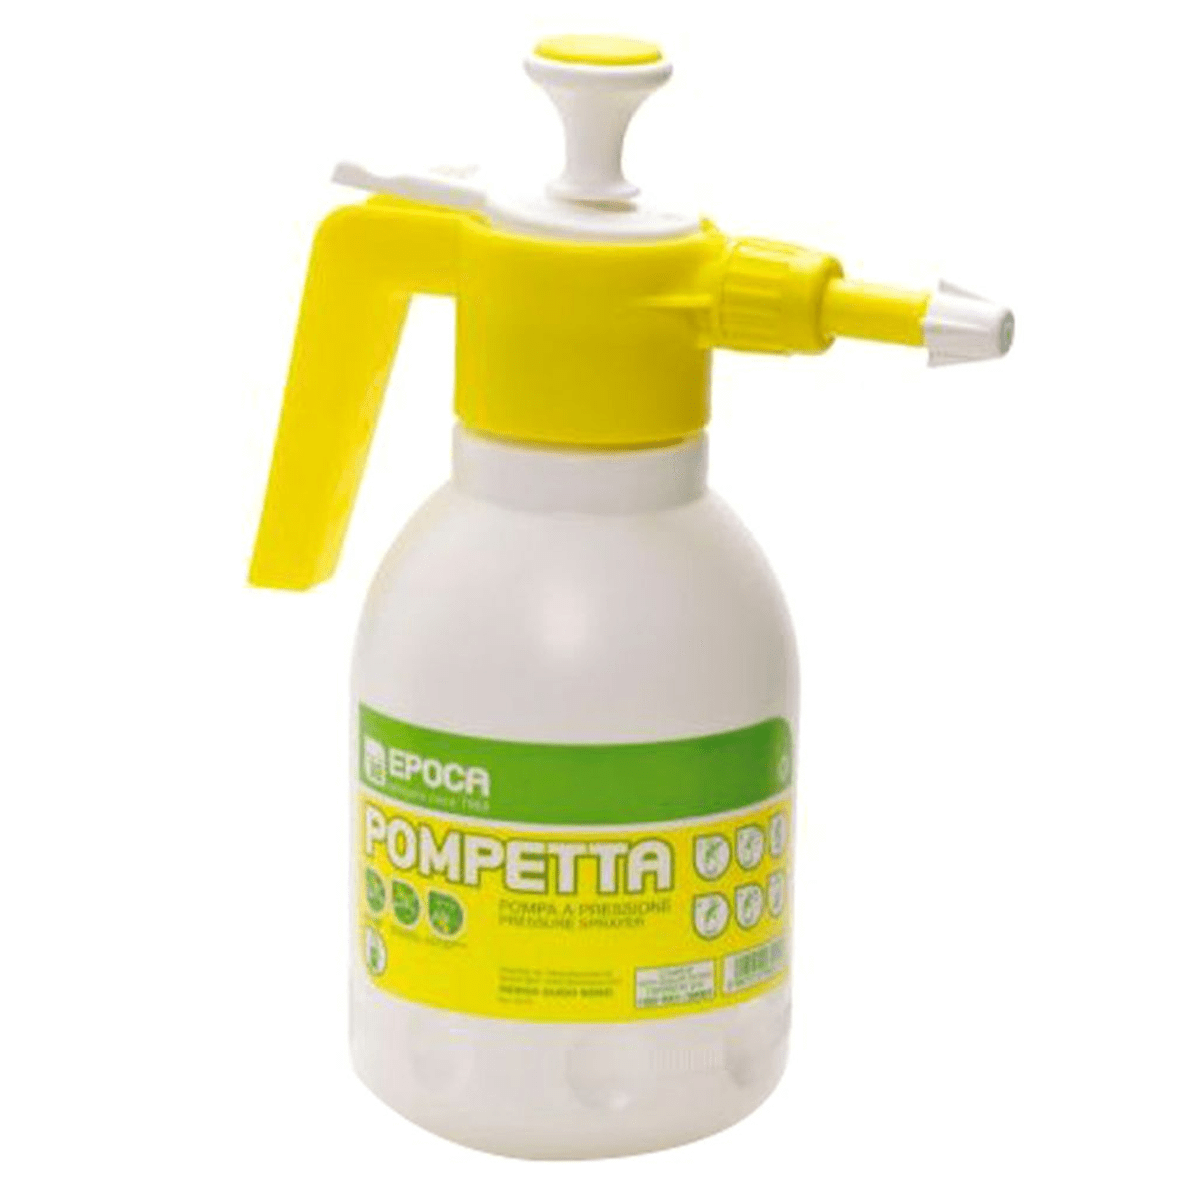 Epoca Pompetta Garden Pressure Sprayer Yellow/White